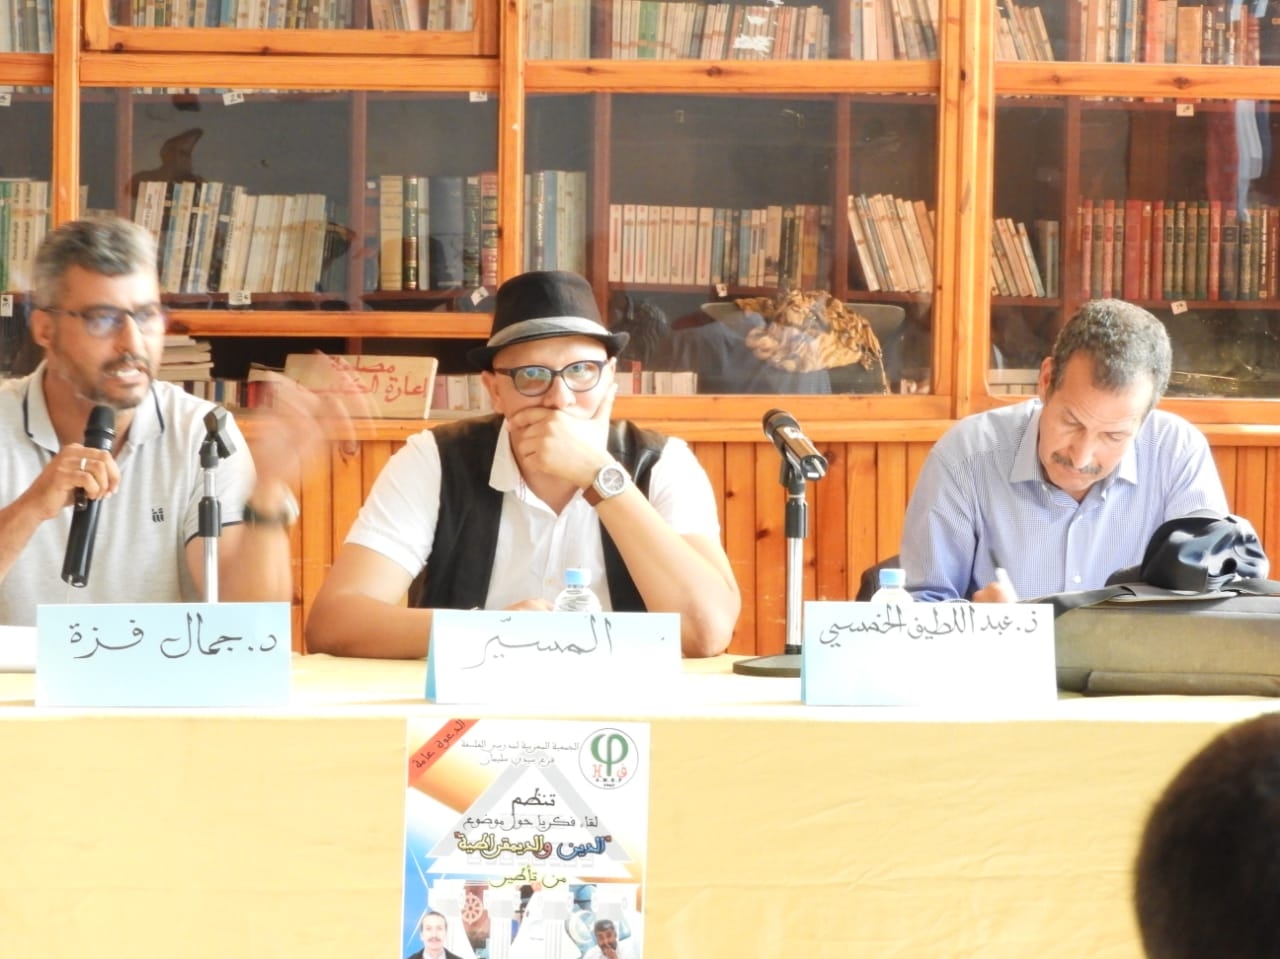 الدين والديمقراطية موضوع لقاء فكري بمدينة سيدي سليمان